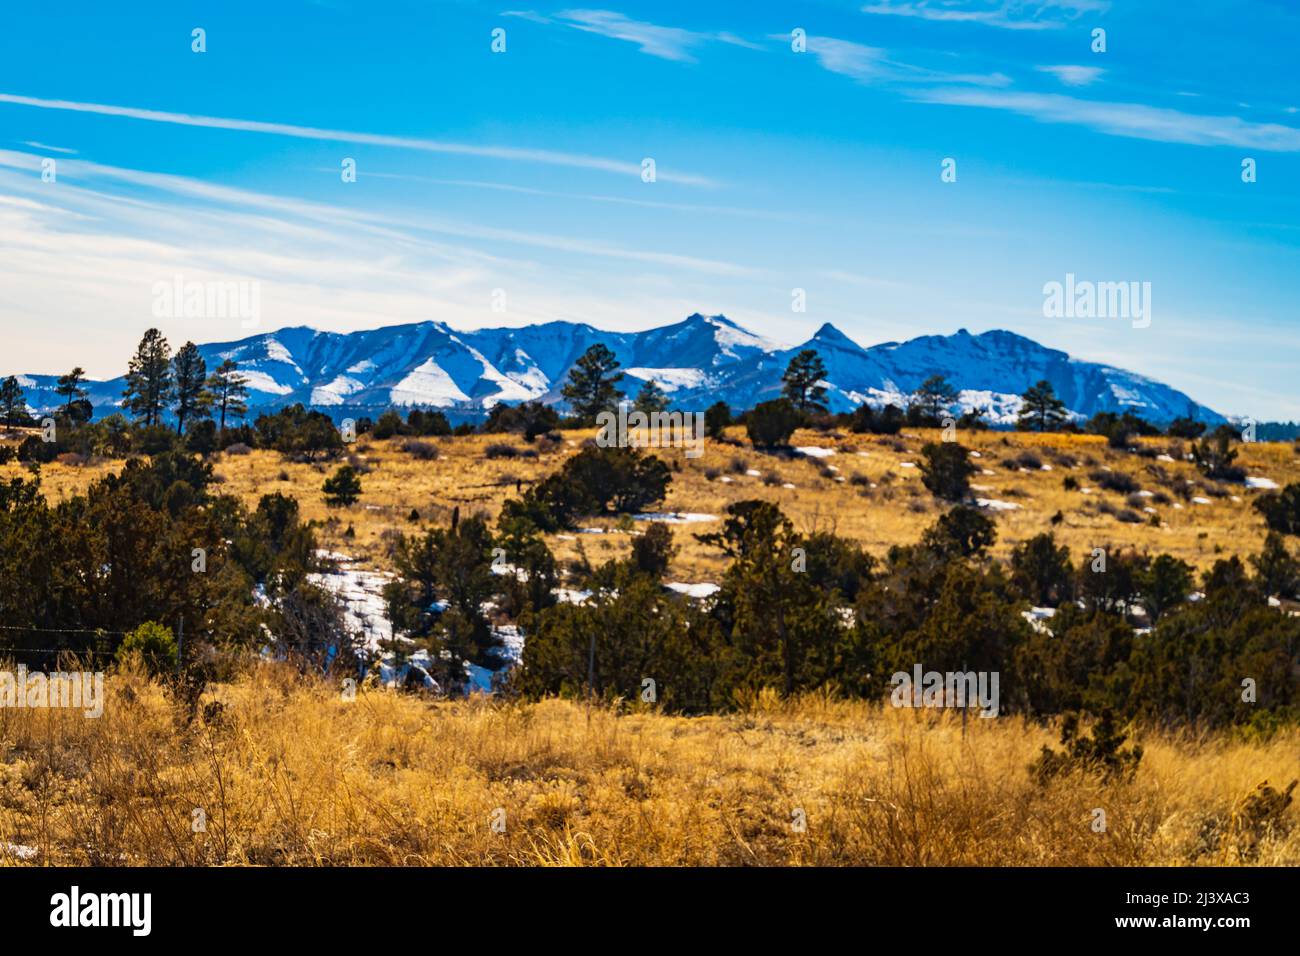 La chaîne de montagnes Ortiz a été enneigée dans le nord du Nouveau-Mexique Banque D'Images